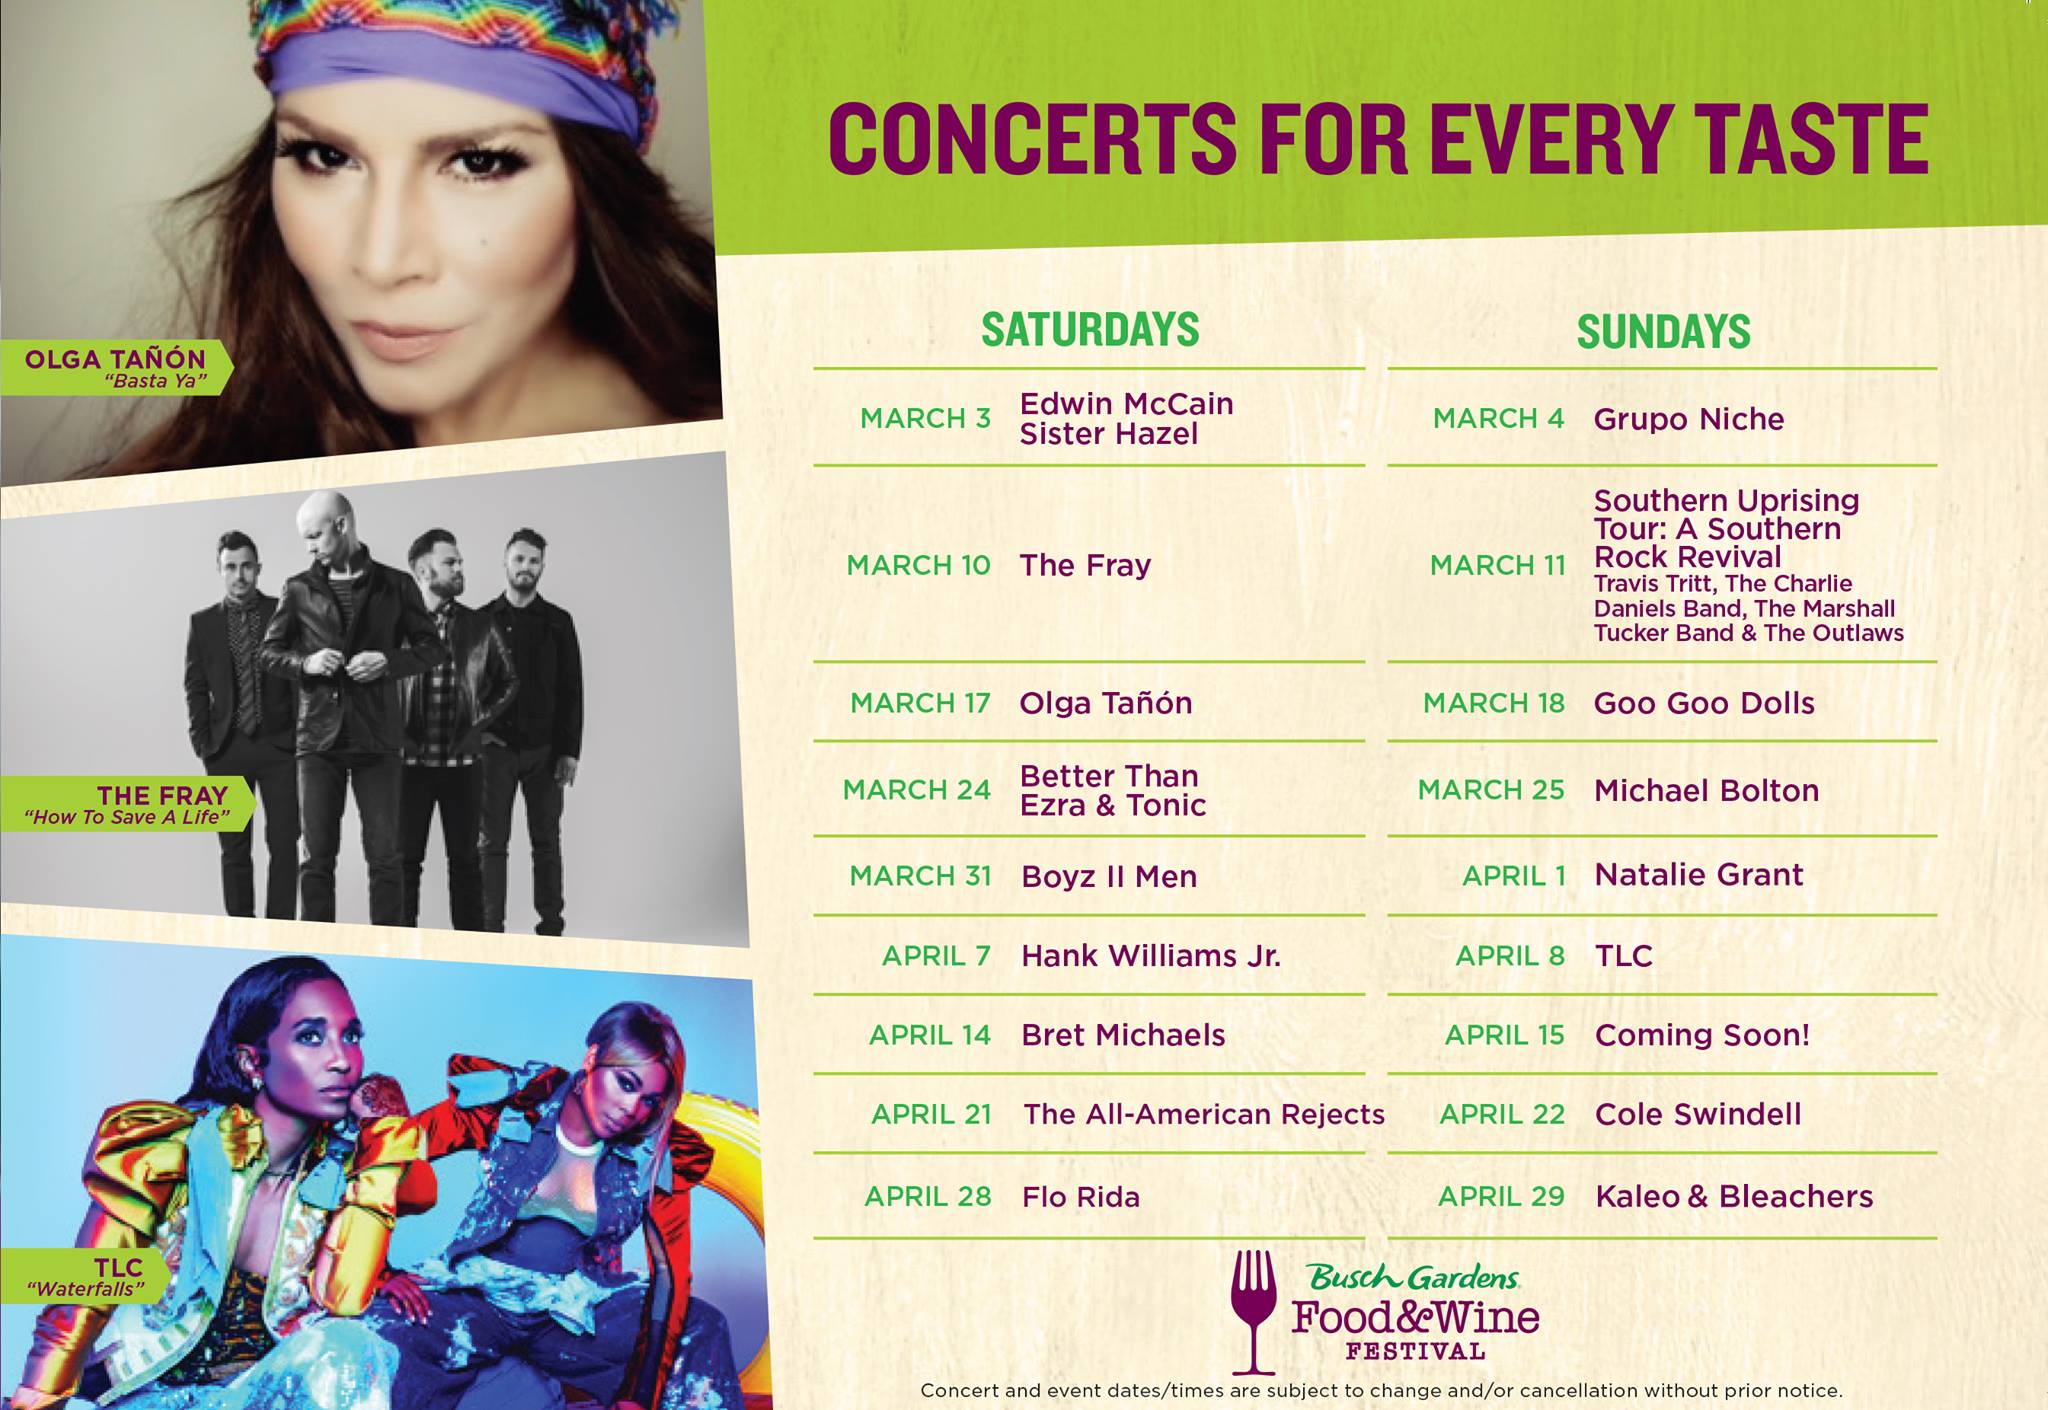 Busch Gardens 2018 Food & Wine Festival Concert Lineup